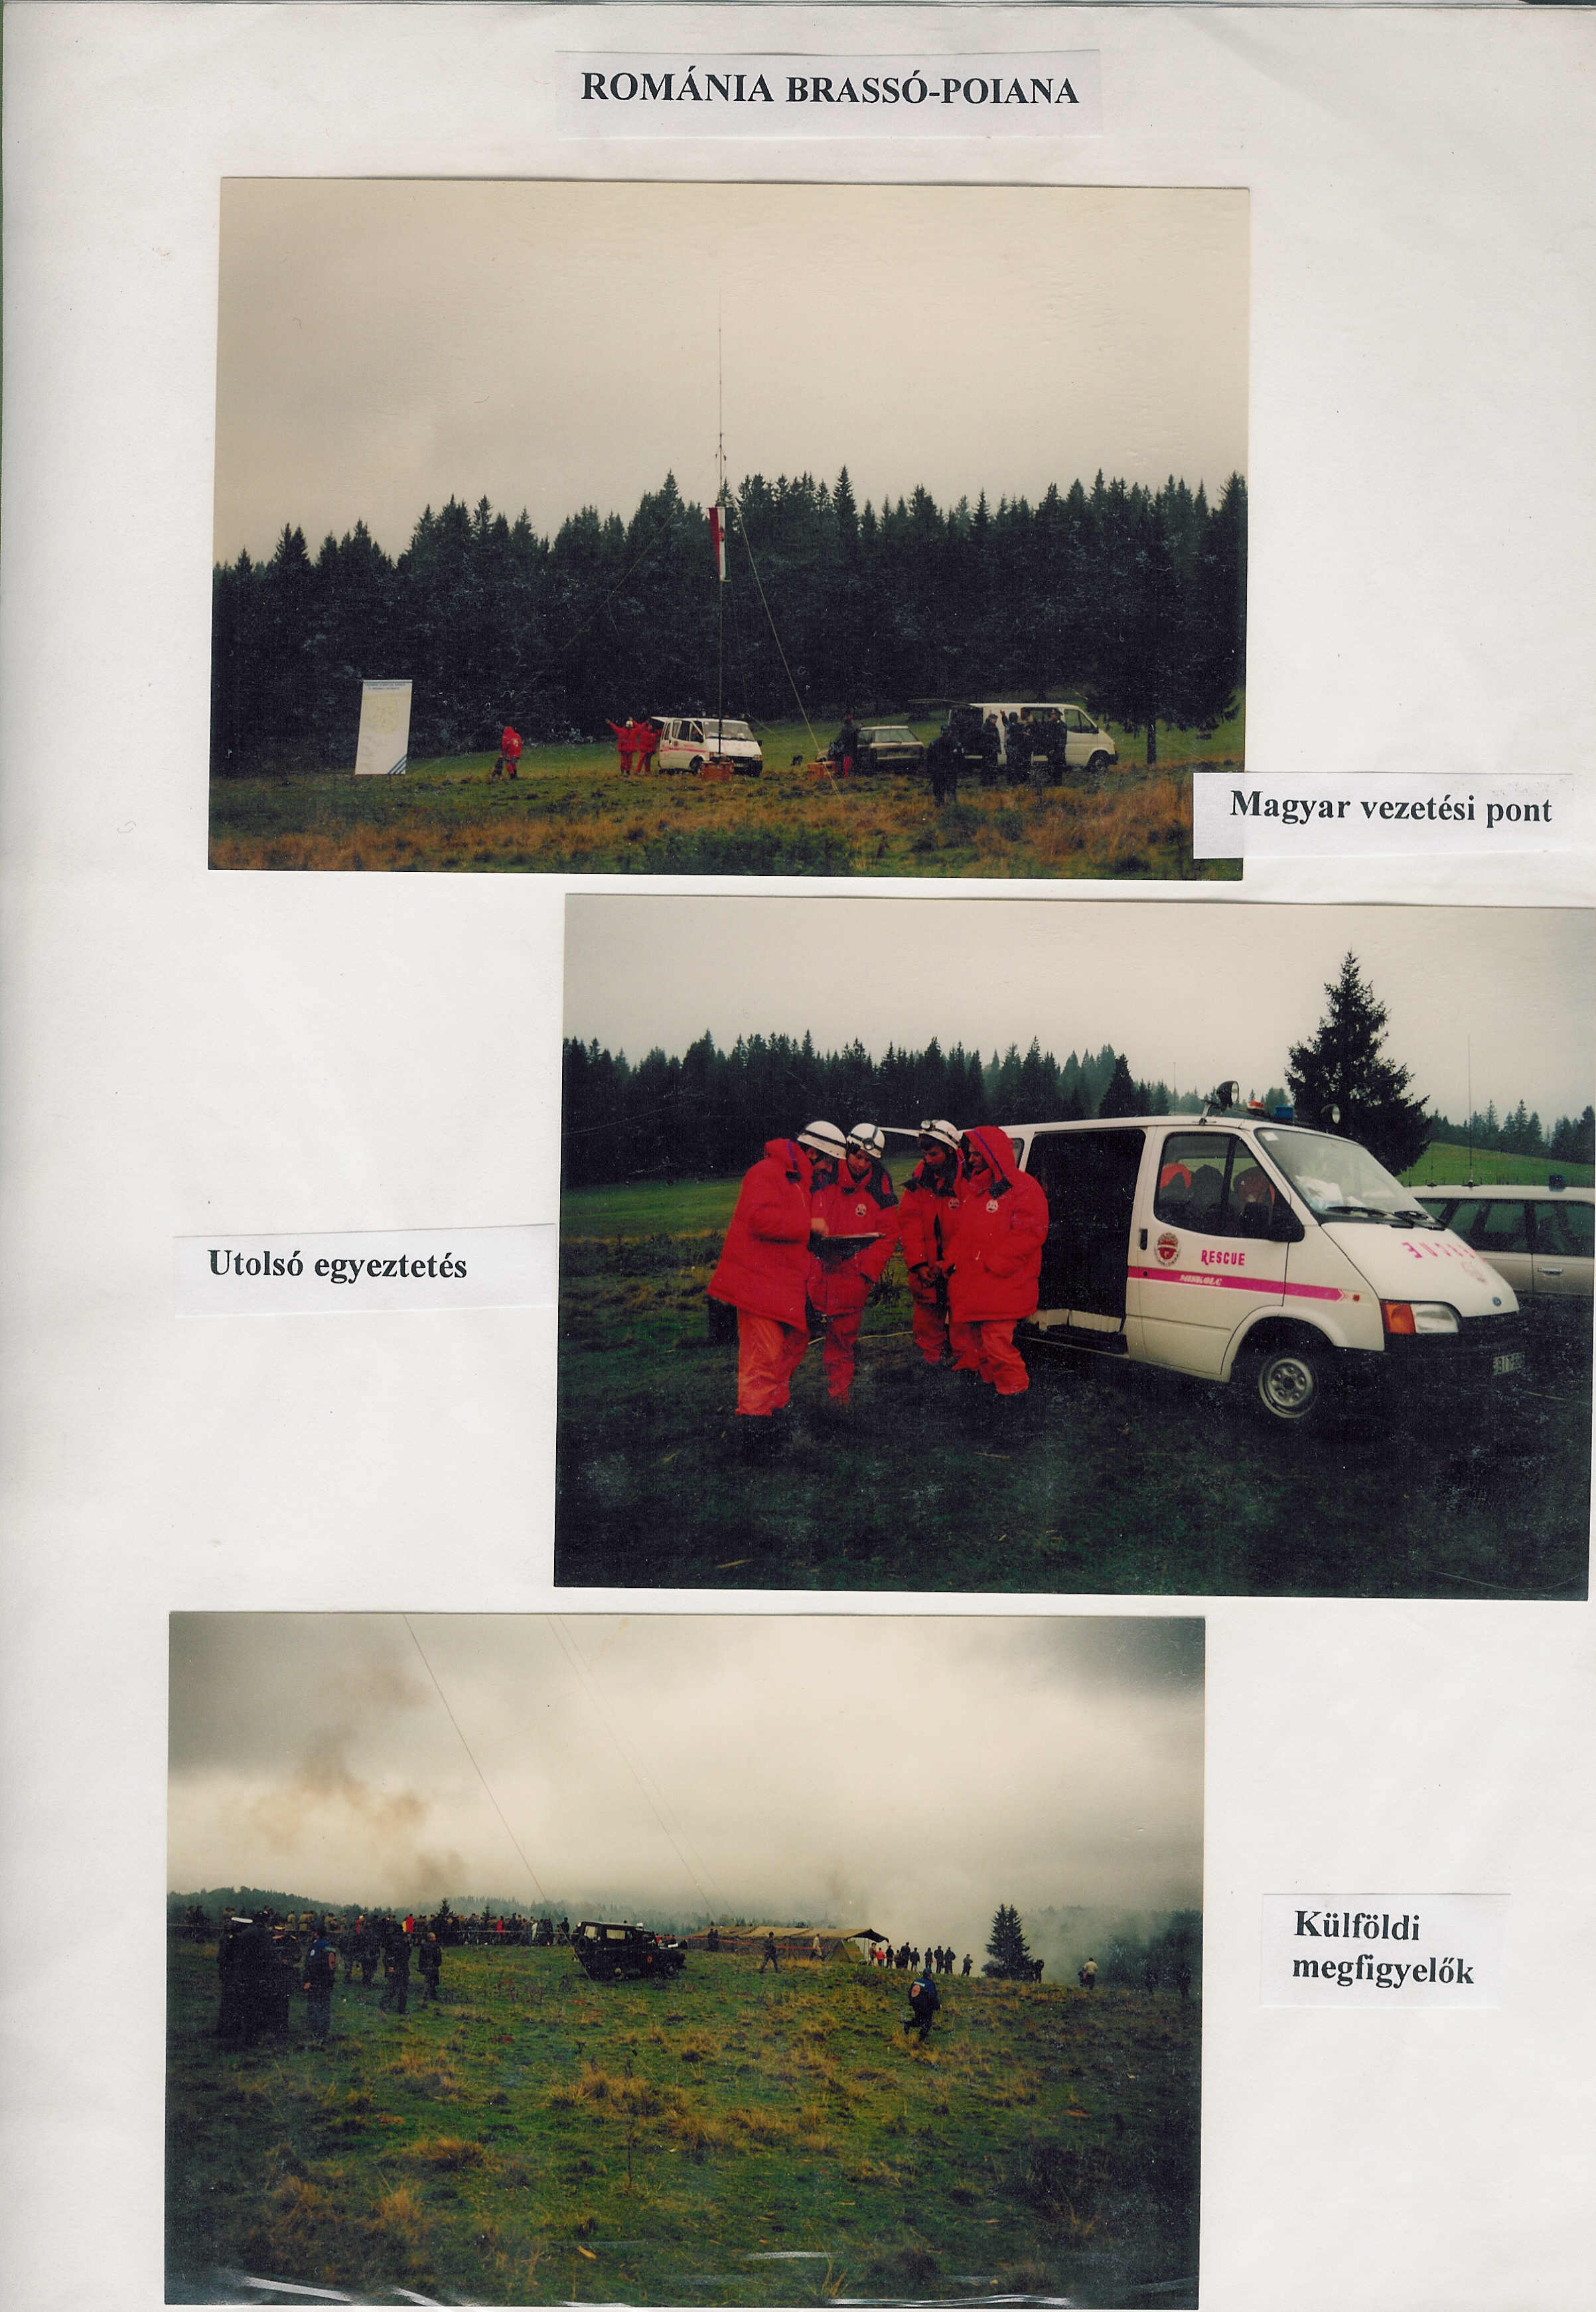 1997 Romania légikatasztrófa imitáció